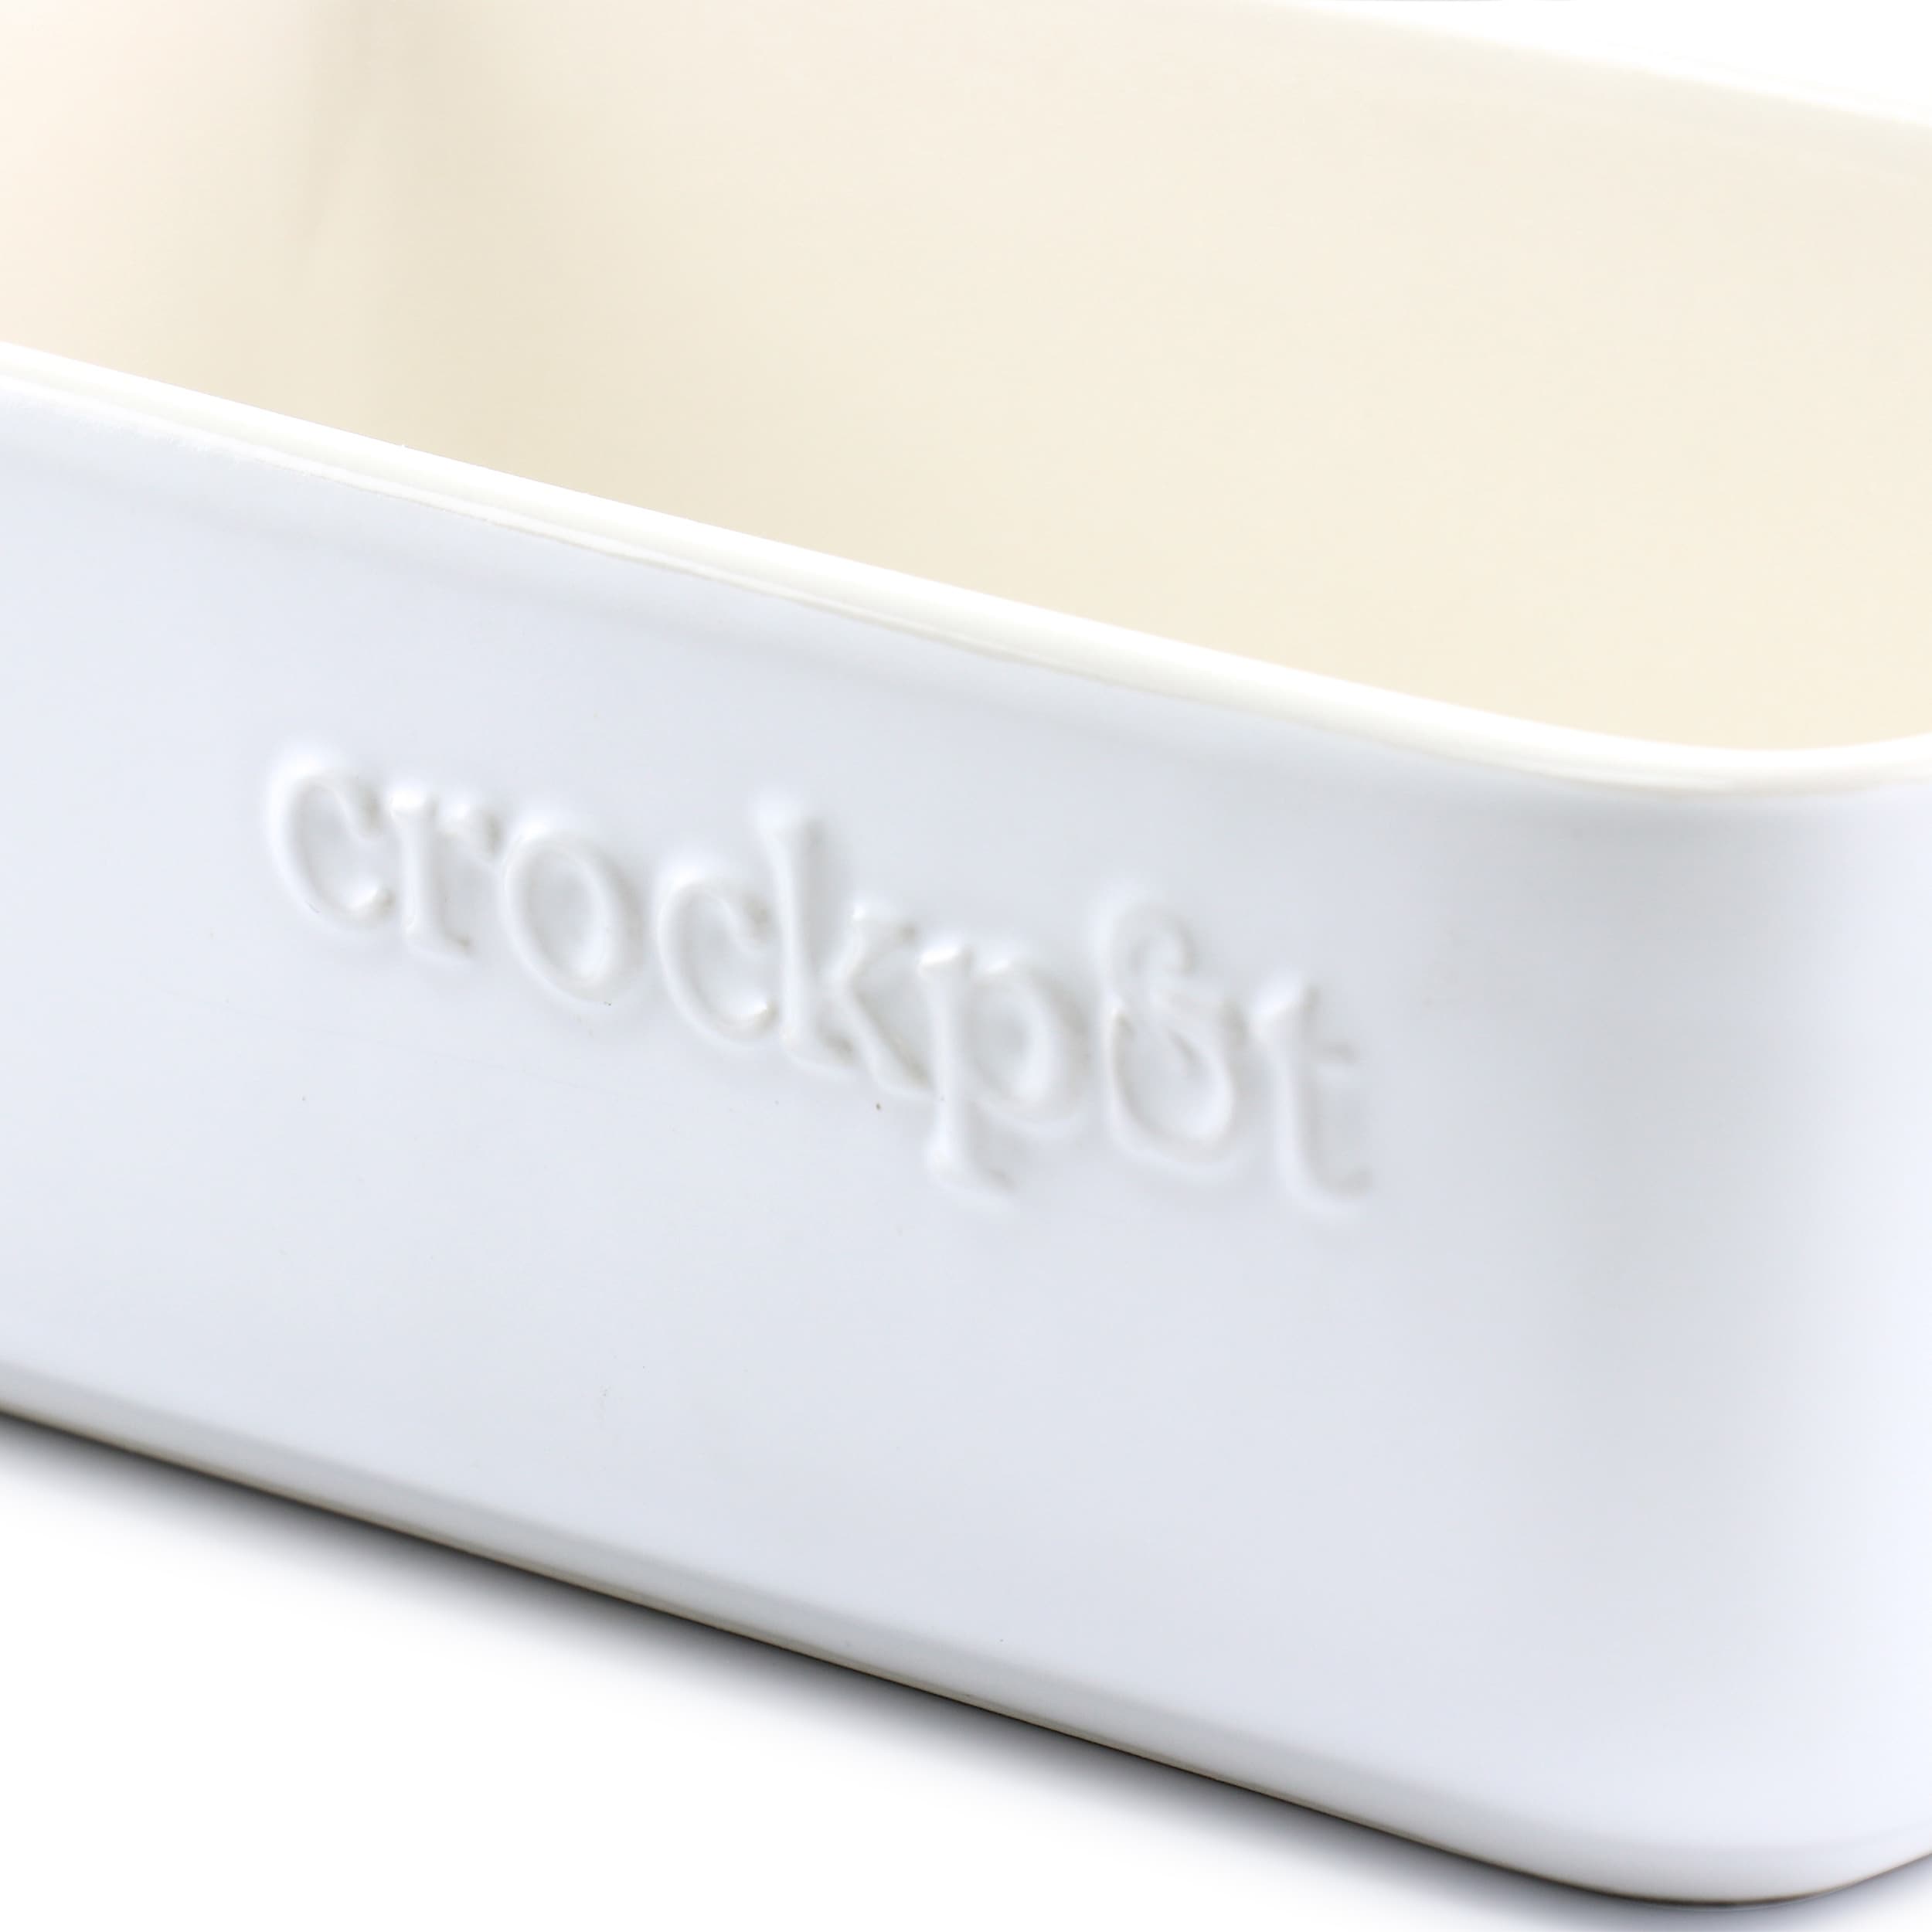 Crockpot Artisan 4 Quart Rectangular Stoneware Bake Pan in Cream